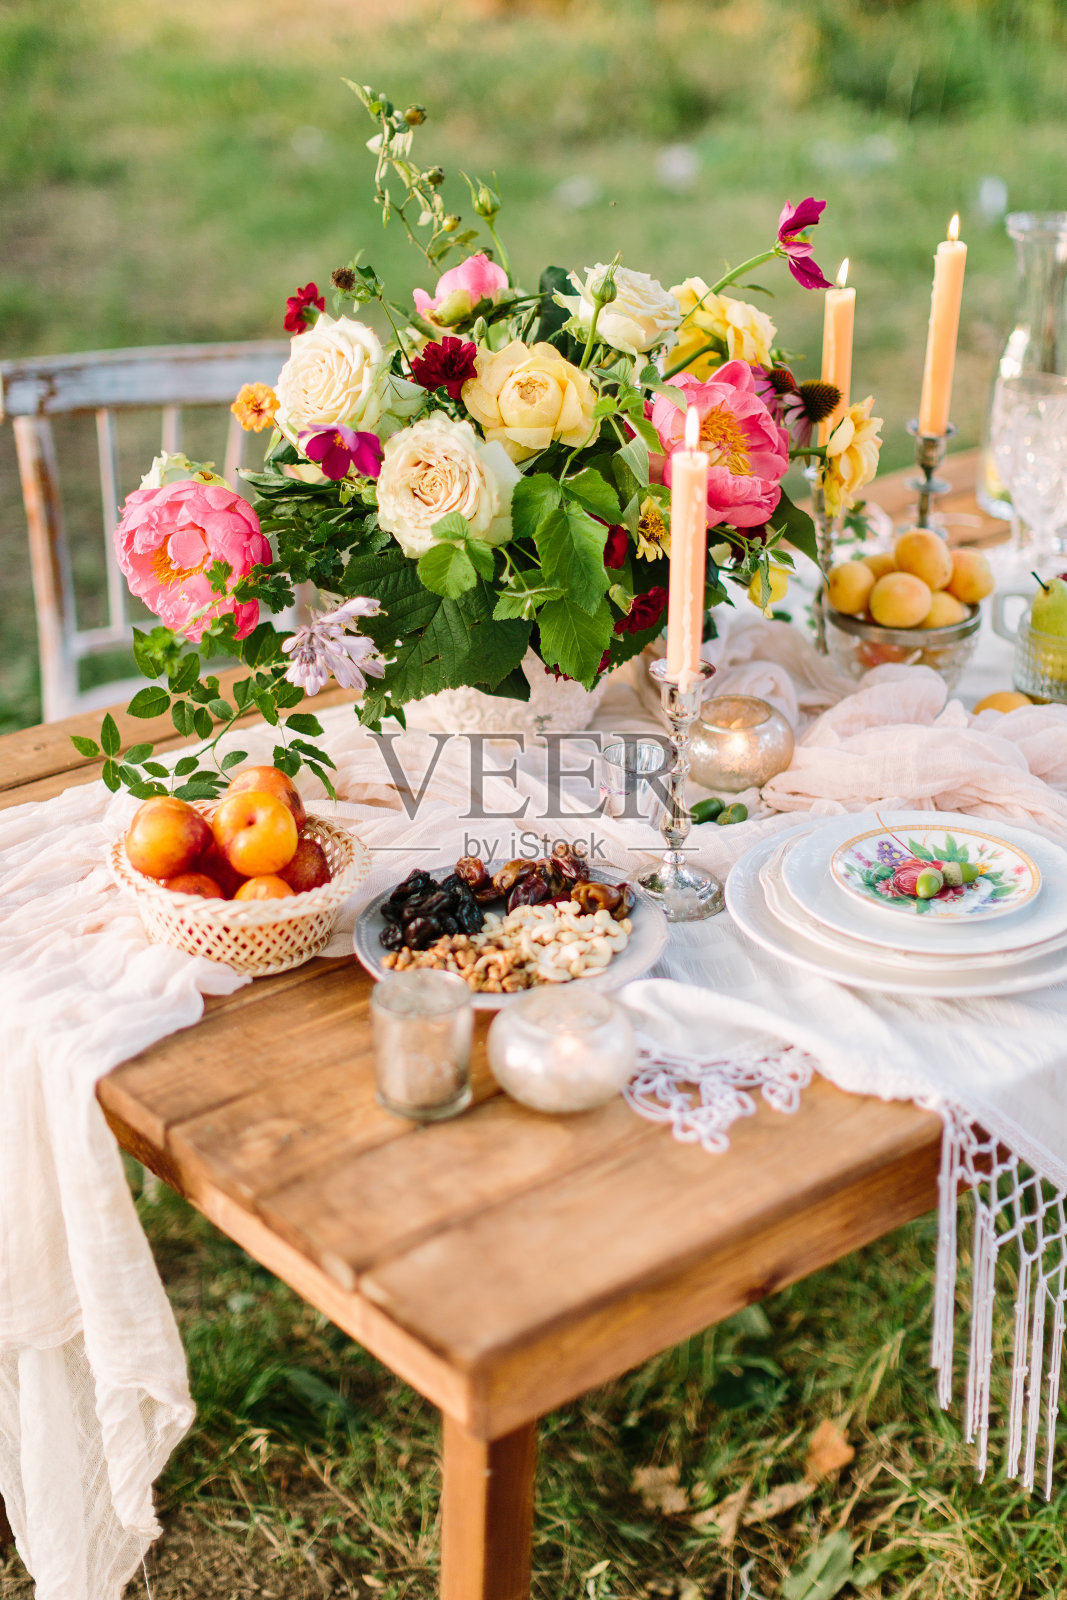 浪漫、爱情、婚礼、假日、装饰、休息概念——浪漫的餐桌布置，中间点缀着鲜艳的五彩花束，白色的宴席餐具，细长的蜡烛，水果和坚果照片摄影图片